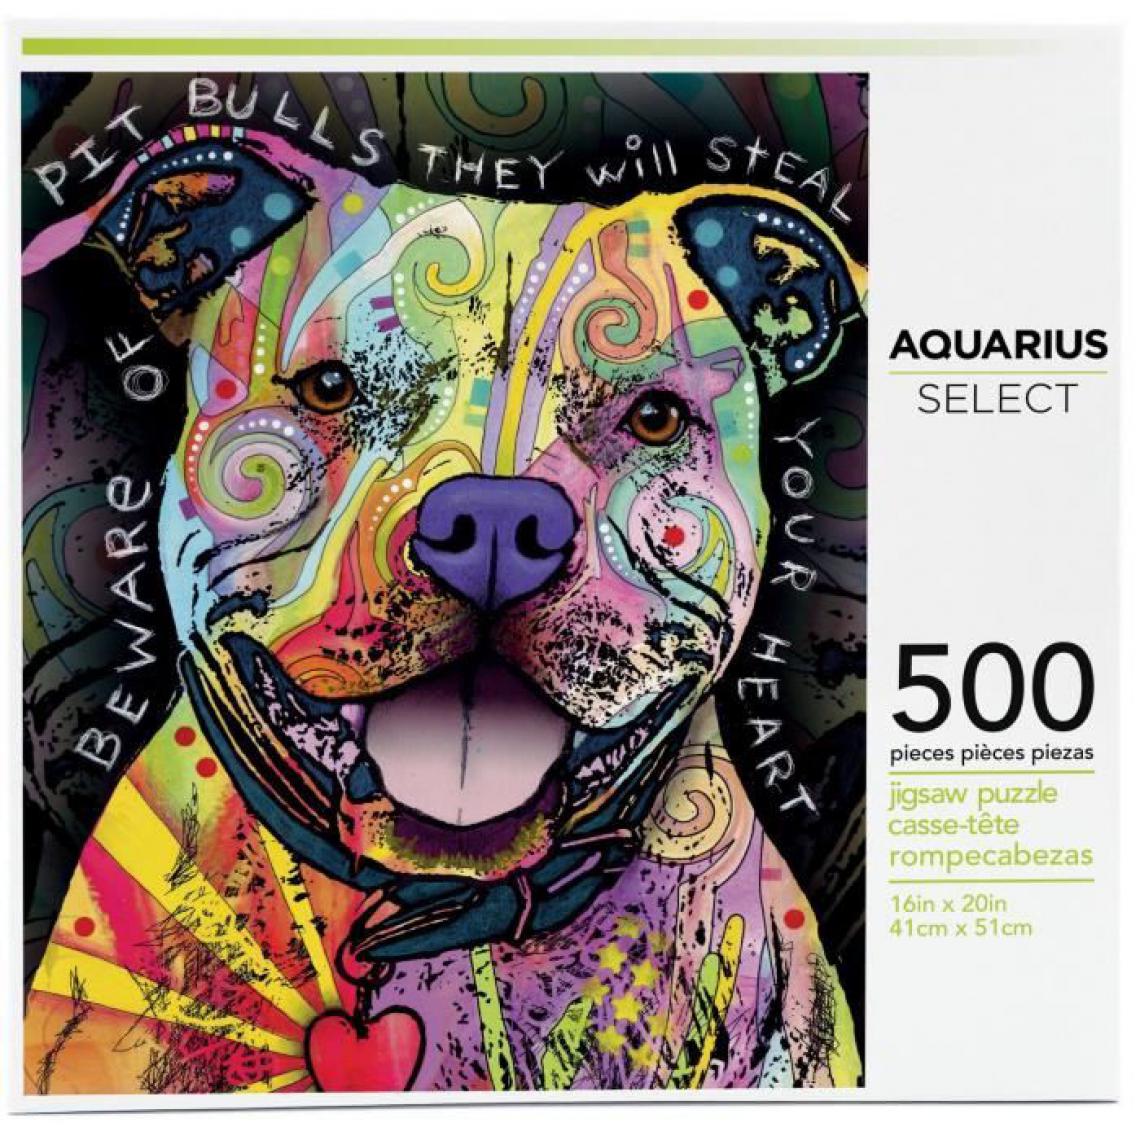 Aquarius - AQUARIUS Puzzle 500 pieces Dean Russo Pit Bull - 62502 - Animaux